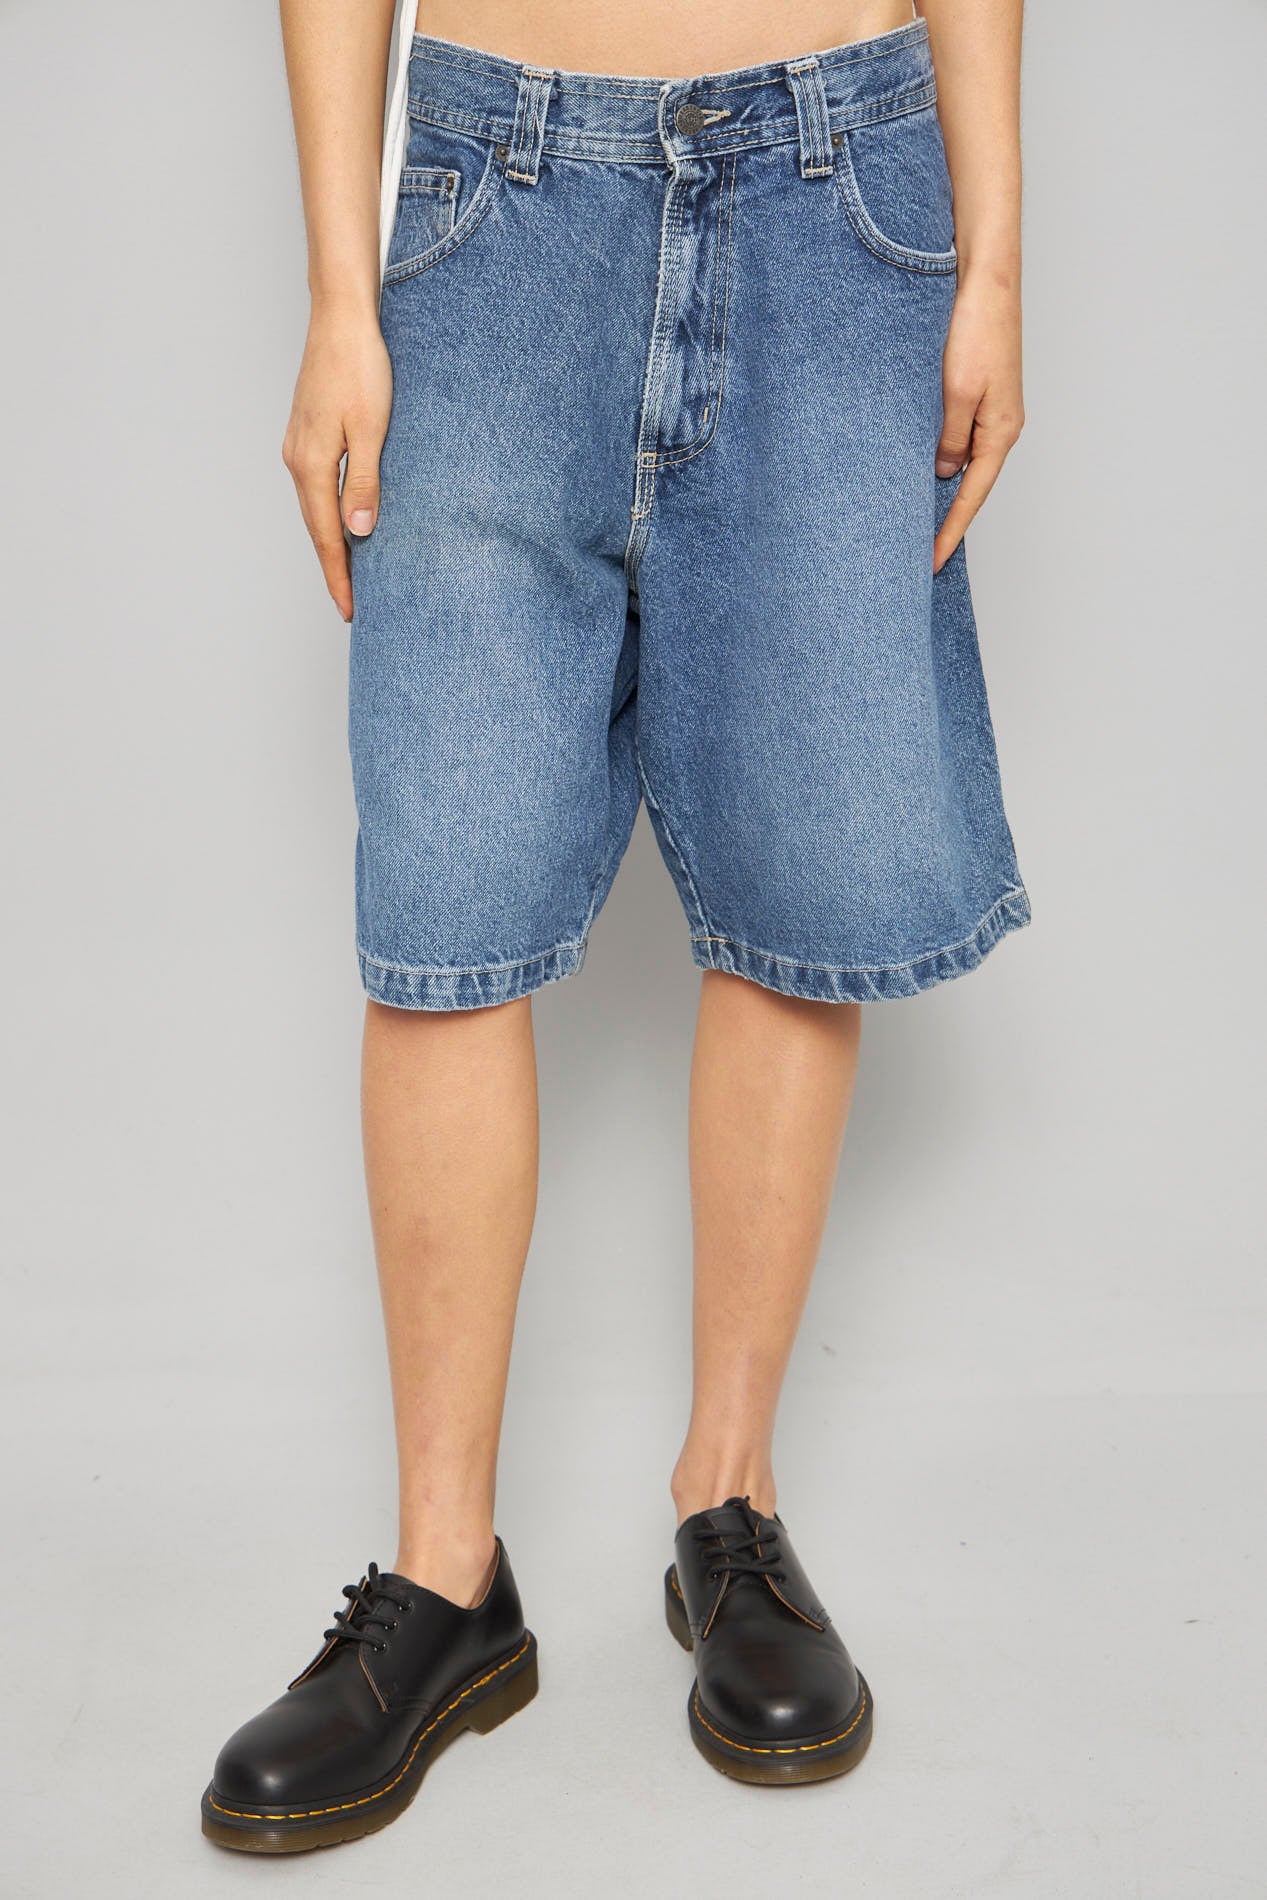 Shorts casual  azul billabong talla 38 351